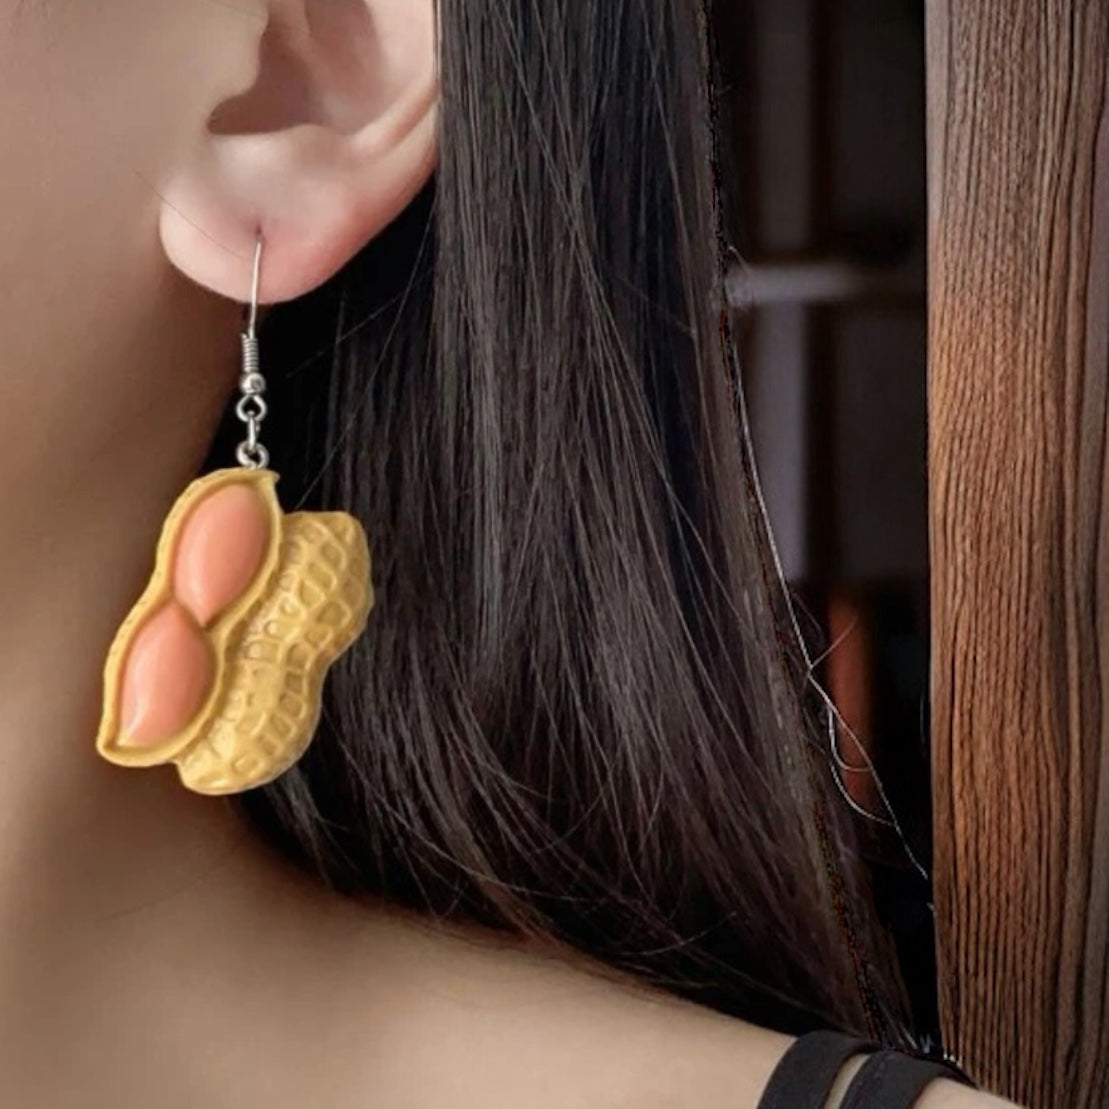 Peanut Earrings - Peanuts, Food Earrings, Peanut Jewelry, Handmade Earrings, Nut Earrings